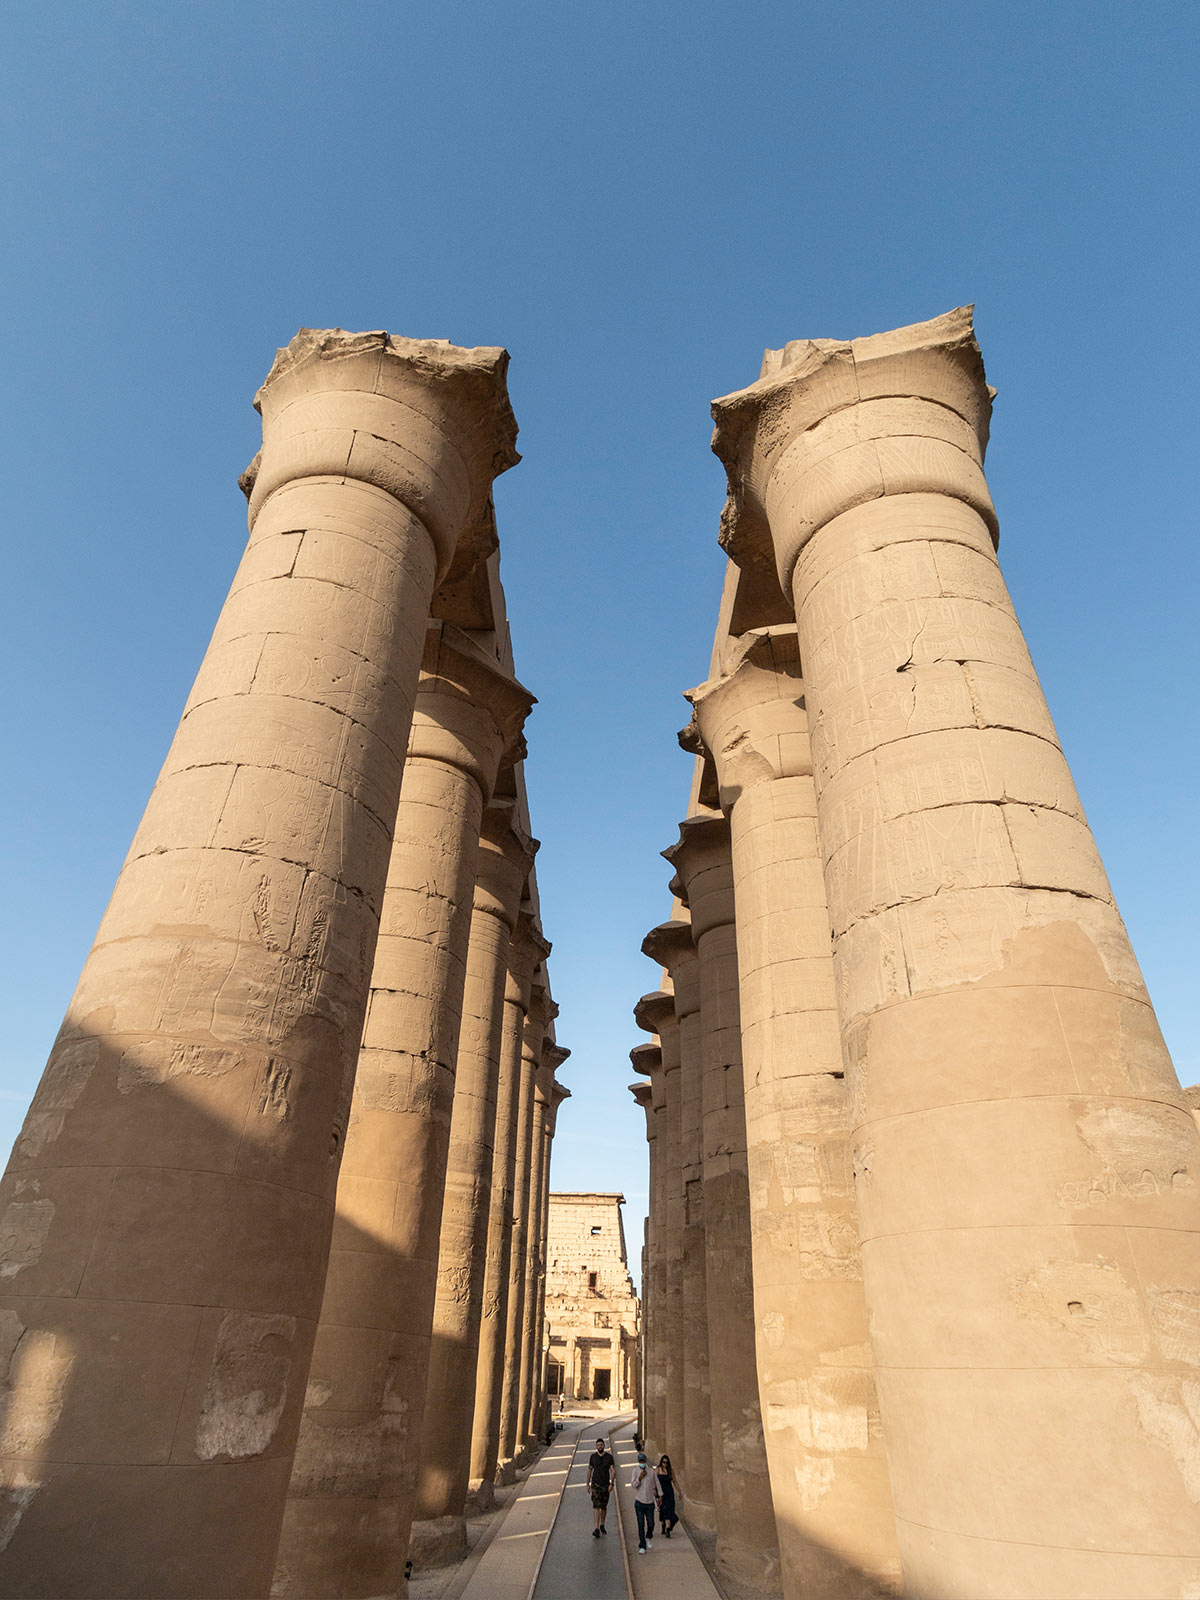 Colonnes, Temple de Louxor, Égypte / Columns, Luxor Temple, Egypt